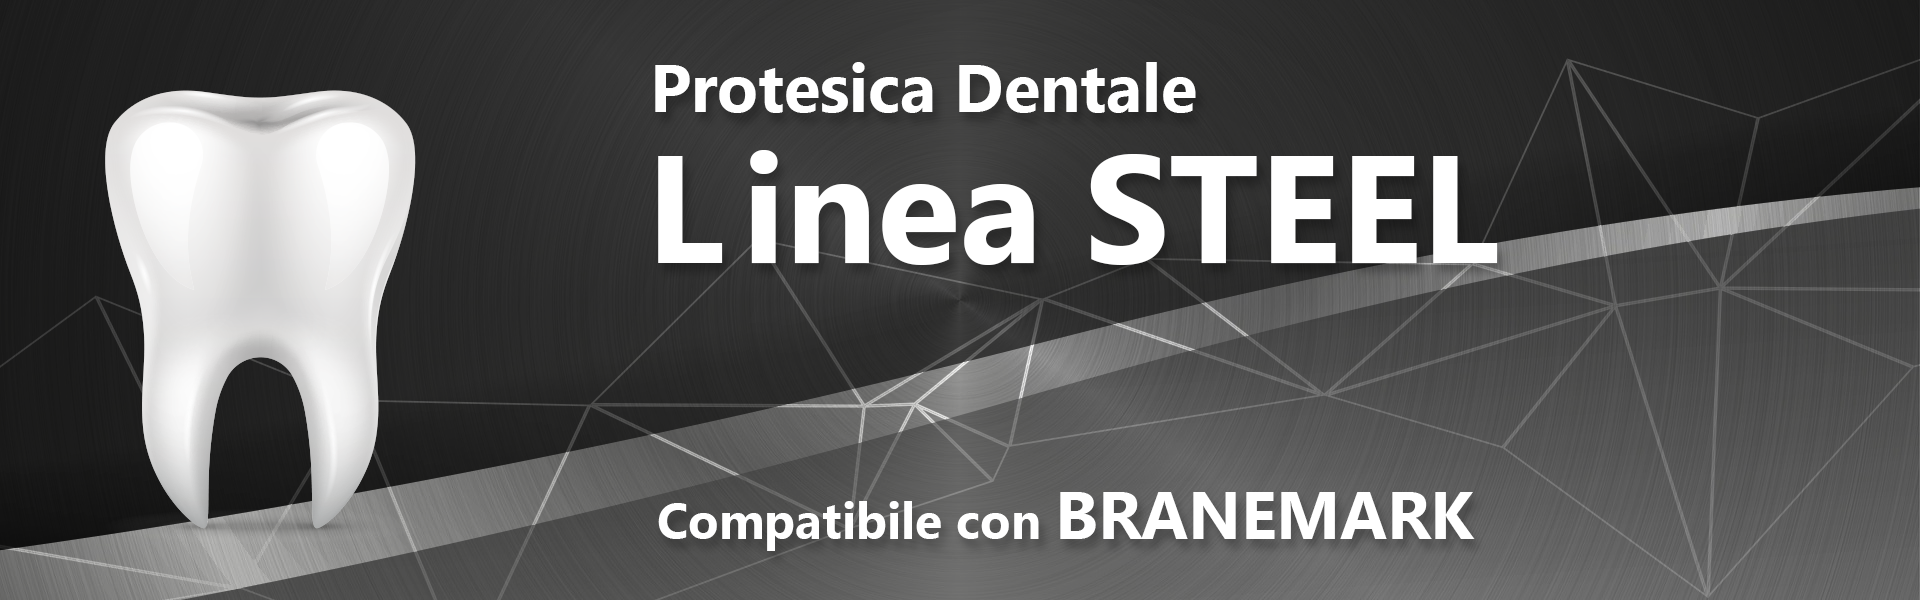 Linea STEEL (compatibile con BRANEMARK)